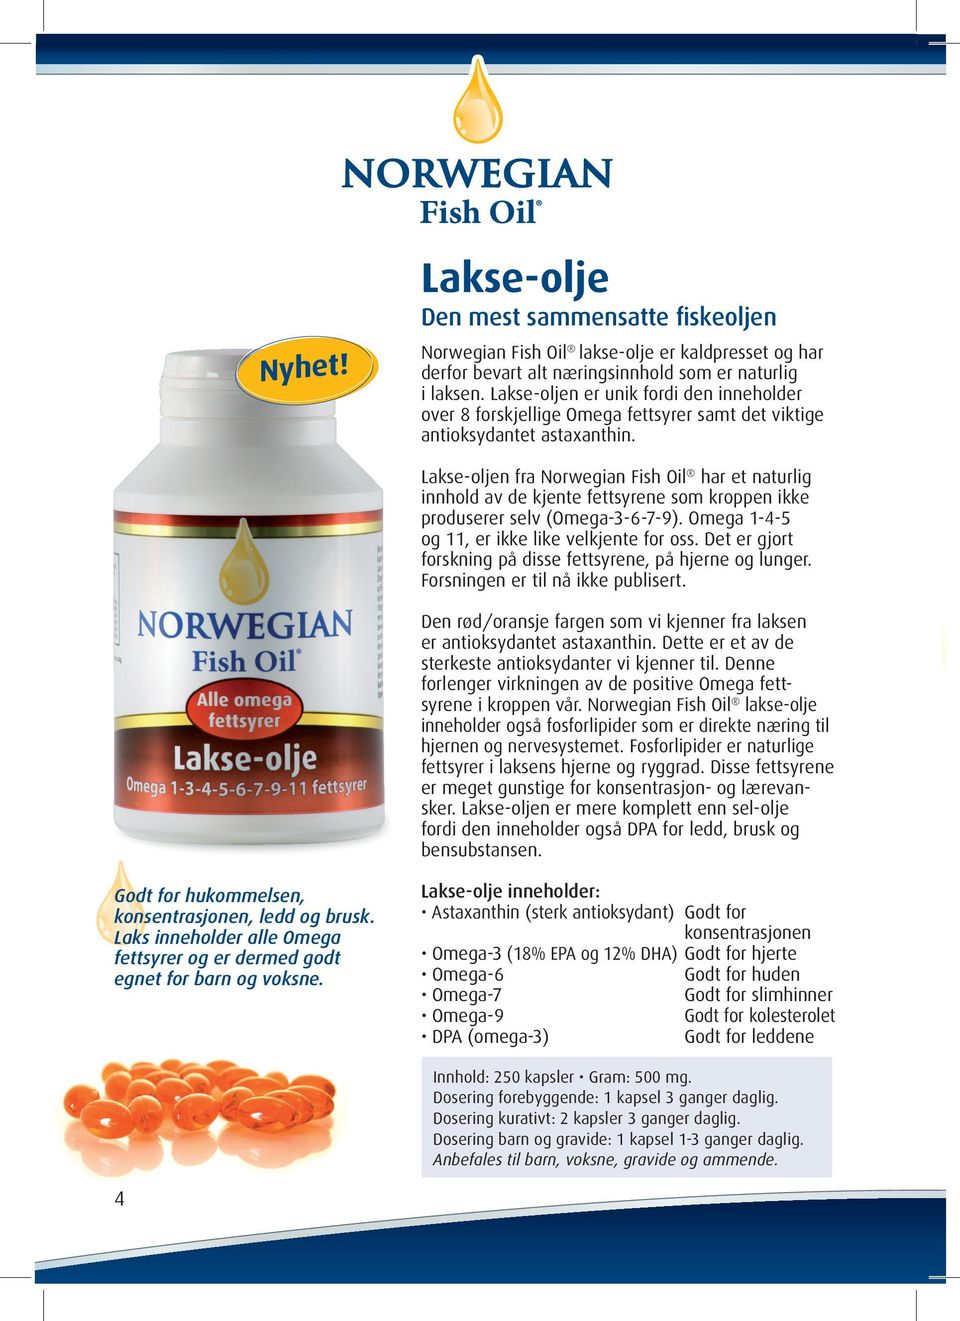 Lakse-oljen fra Norwegian Fish Oil har et naturlig innhold av de kjente fettsyrene som kroppen ikke produserer selv (Omega-3-6-7-9). Omega 1-4-5 og 11, er ikke like velkjente for oss.